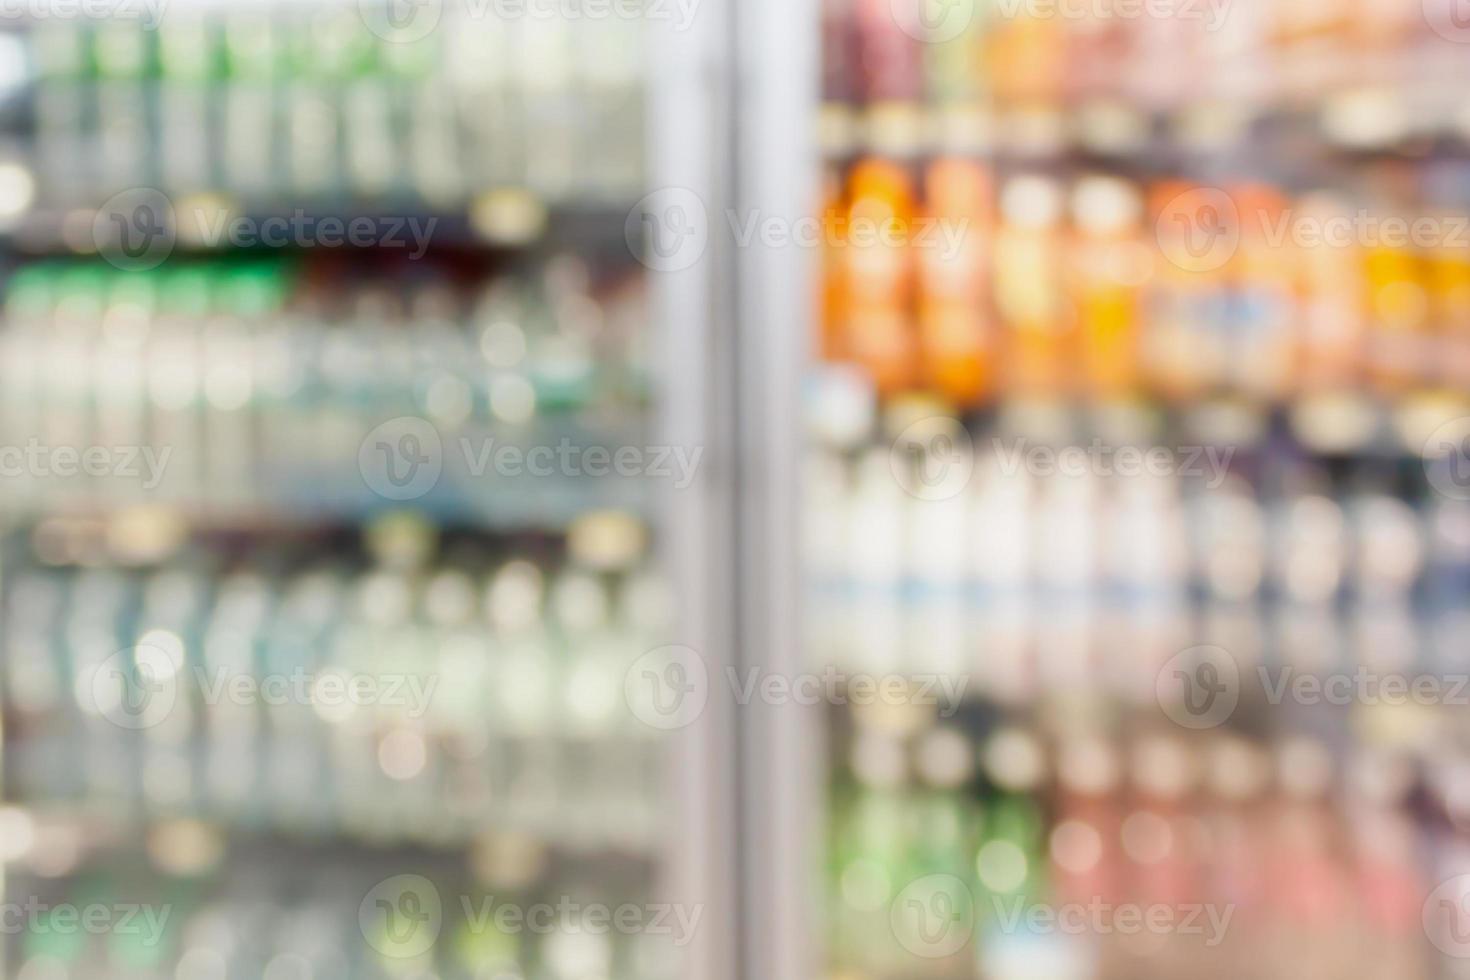 estantes del refrigerador de la tienda de conveniencia fondo borroso foto